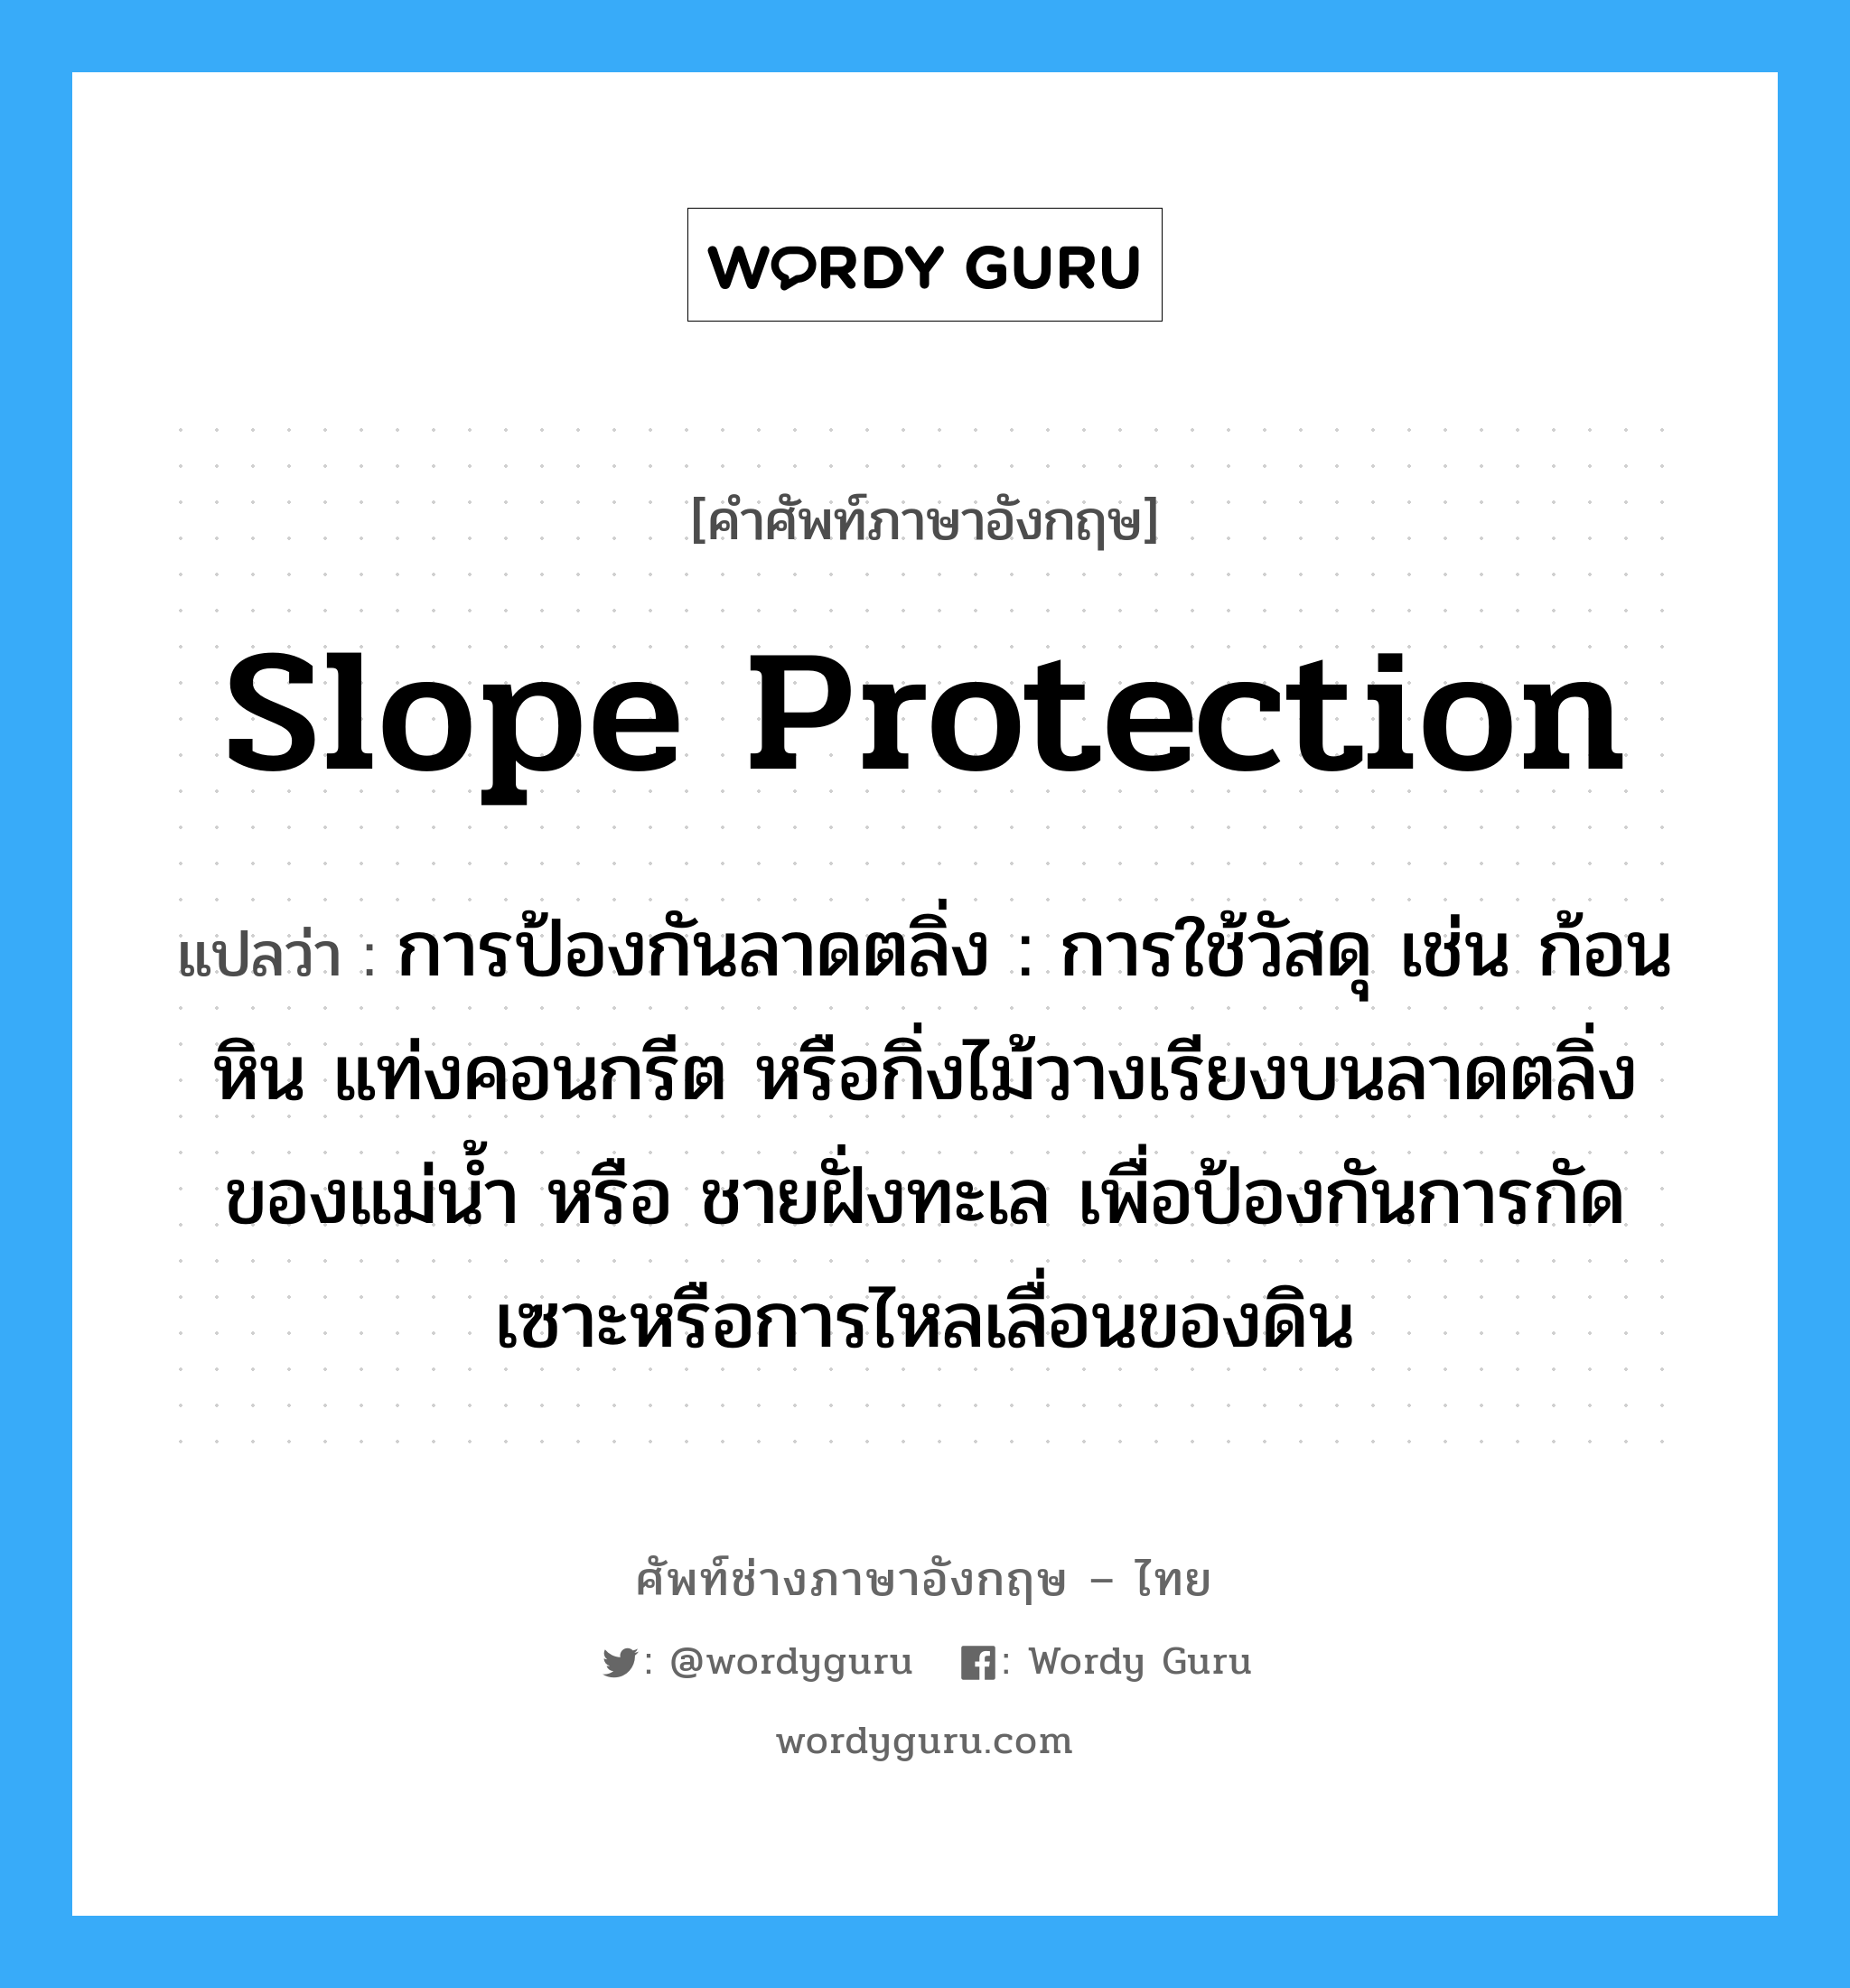 slope protection แปลว่า?, คำศัพท์ช่างภาษาอังกฤษ - ไทย slope protection คำศัพท์ภาษาอังกฤษ slope protection แปลว่า การป้องกันลาดตลิ่ง : การใช้วัสดุ เช่น ก้อนหิน แท่งคอนกรีต หรือกิ่งไม้วางเรียงบนลาดตลิ่งของแม่น้ำ หรือ ชายฝั่งทะเล เพื่อป้องกันการกัดเซาะหรือการไหลเลื่อนของดิน